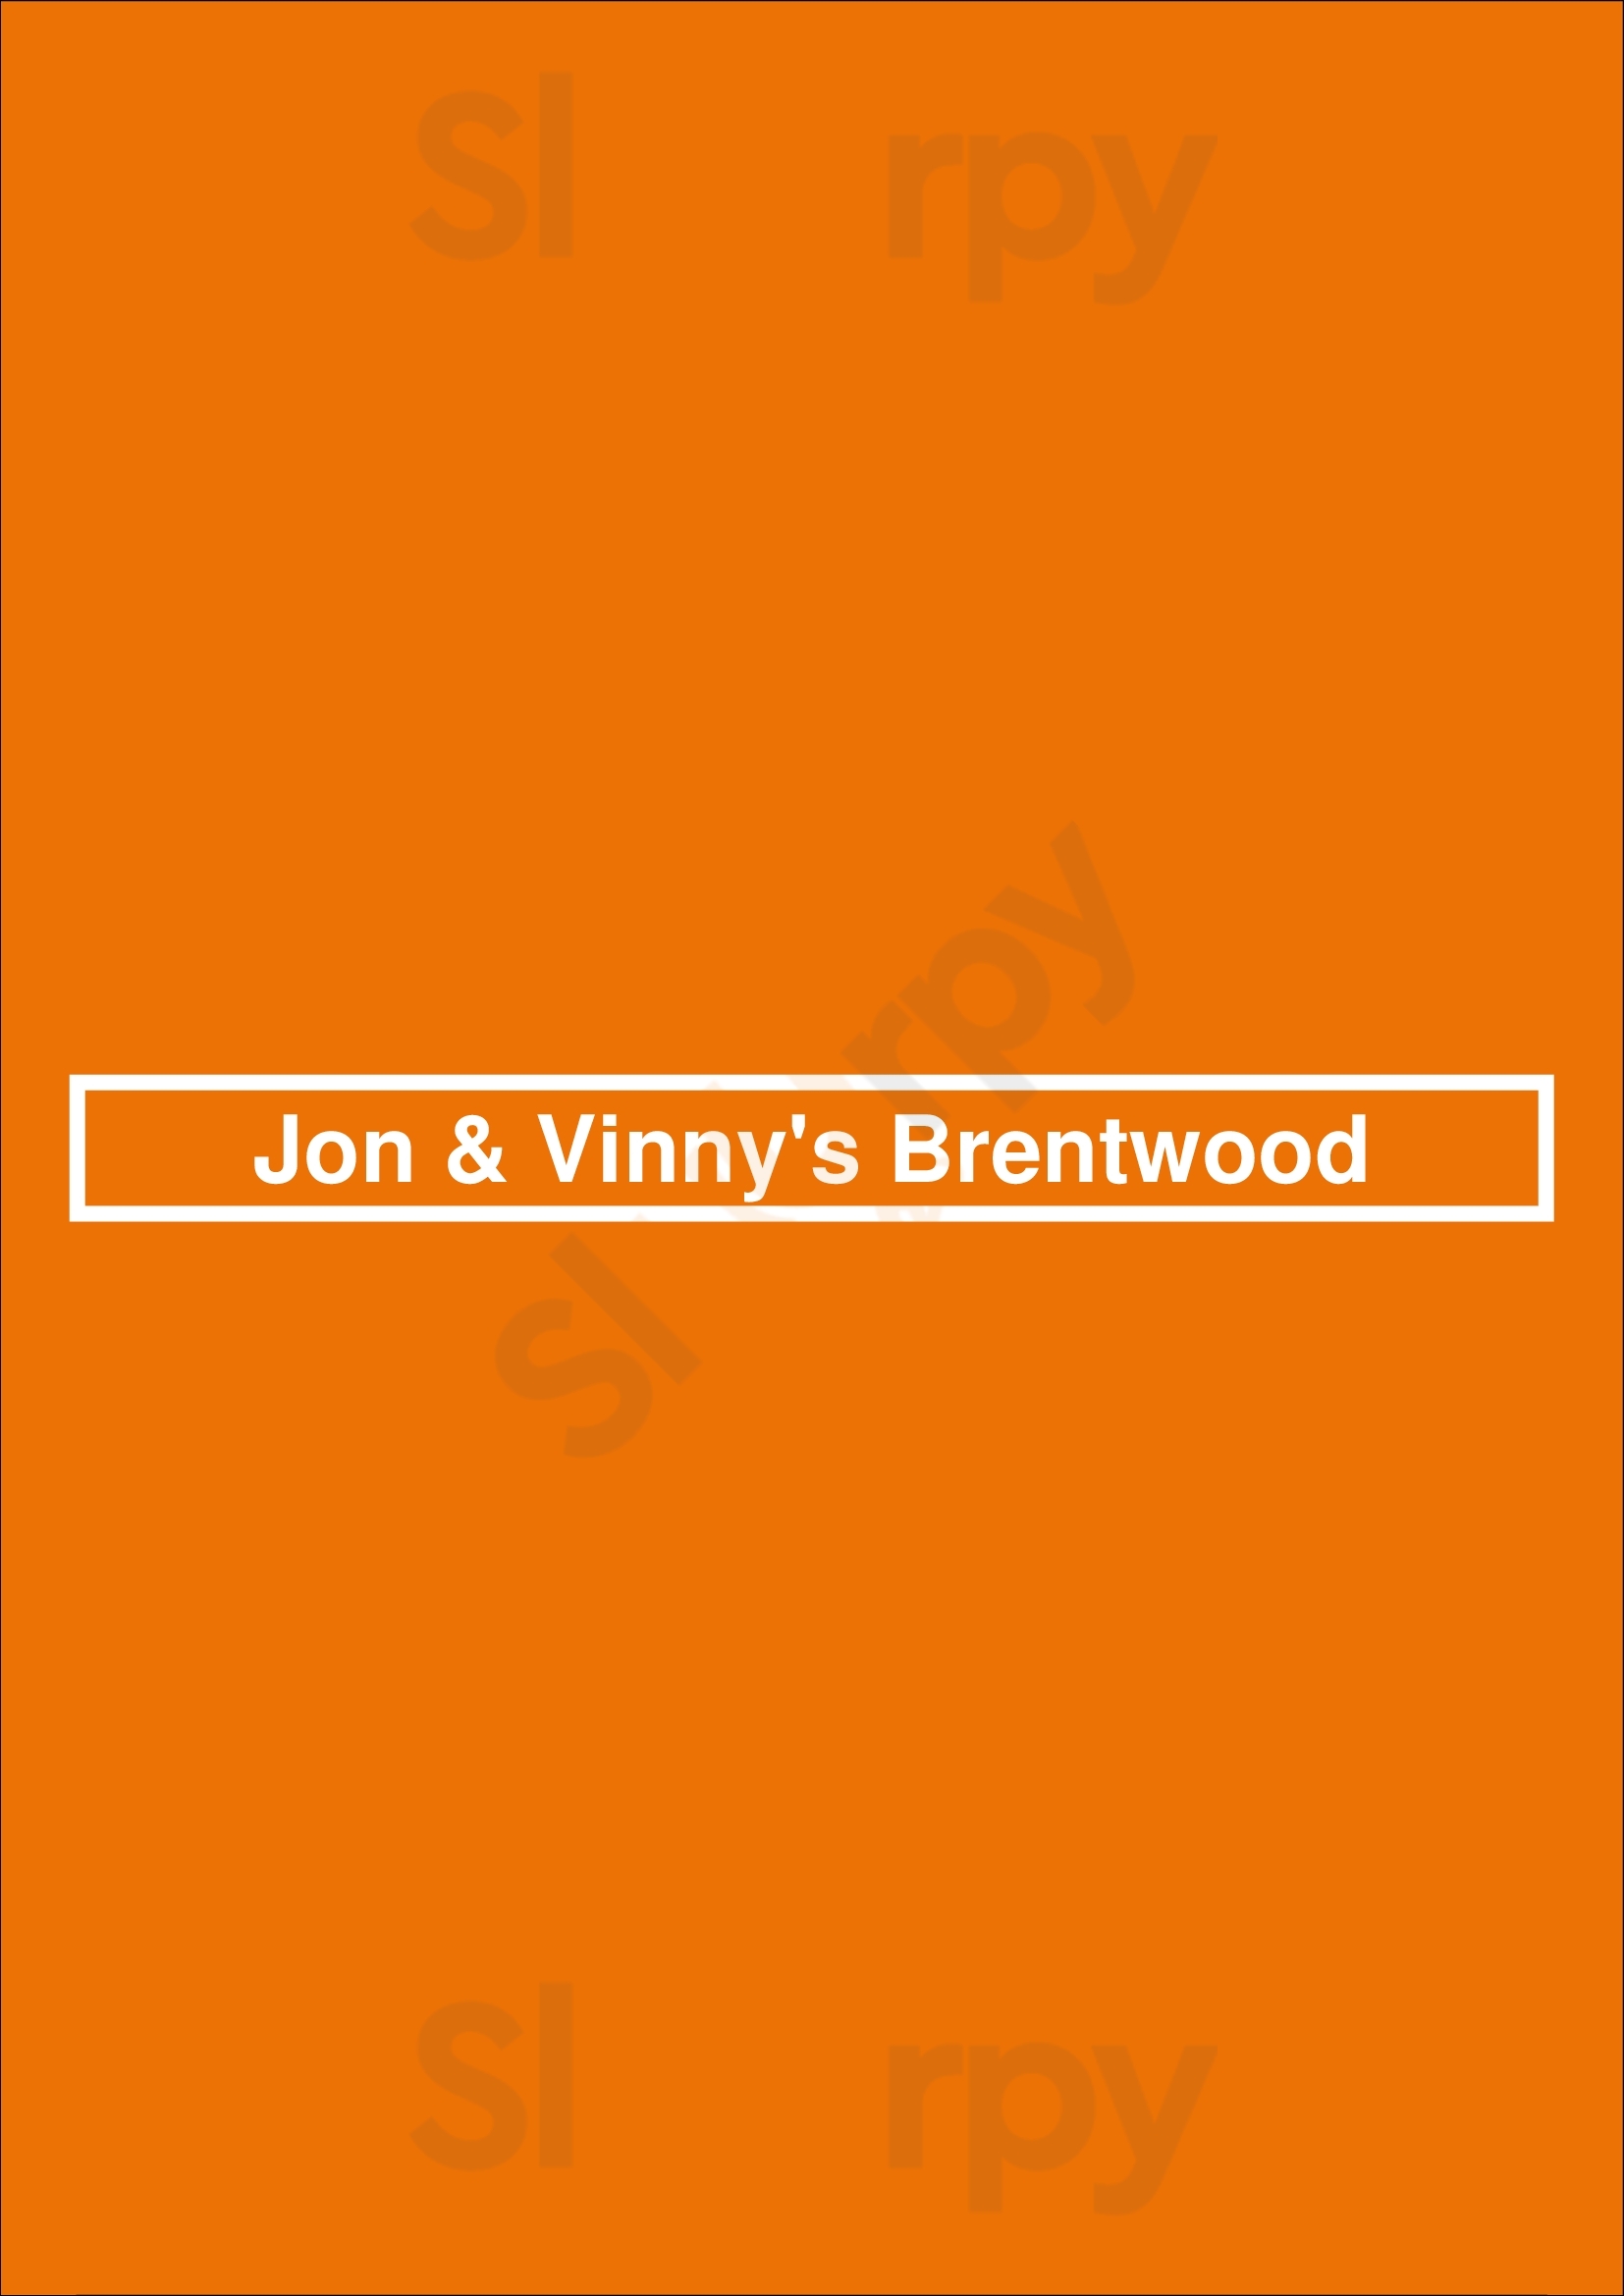 Jon & Vinny's Brentwood Los Angeles Menu - 1